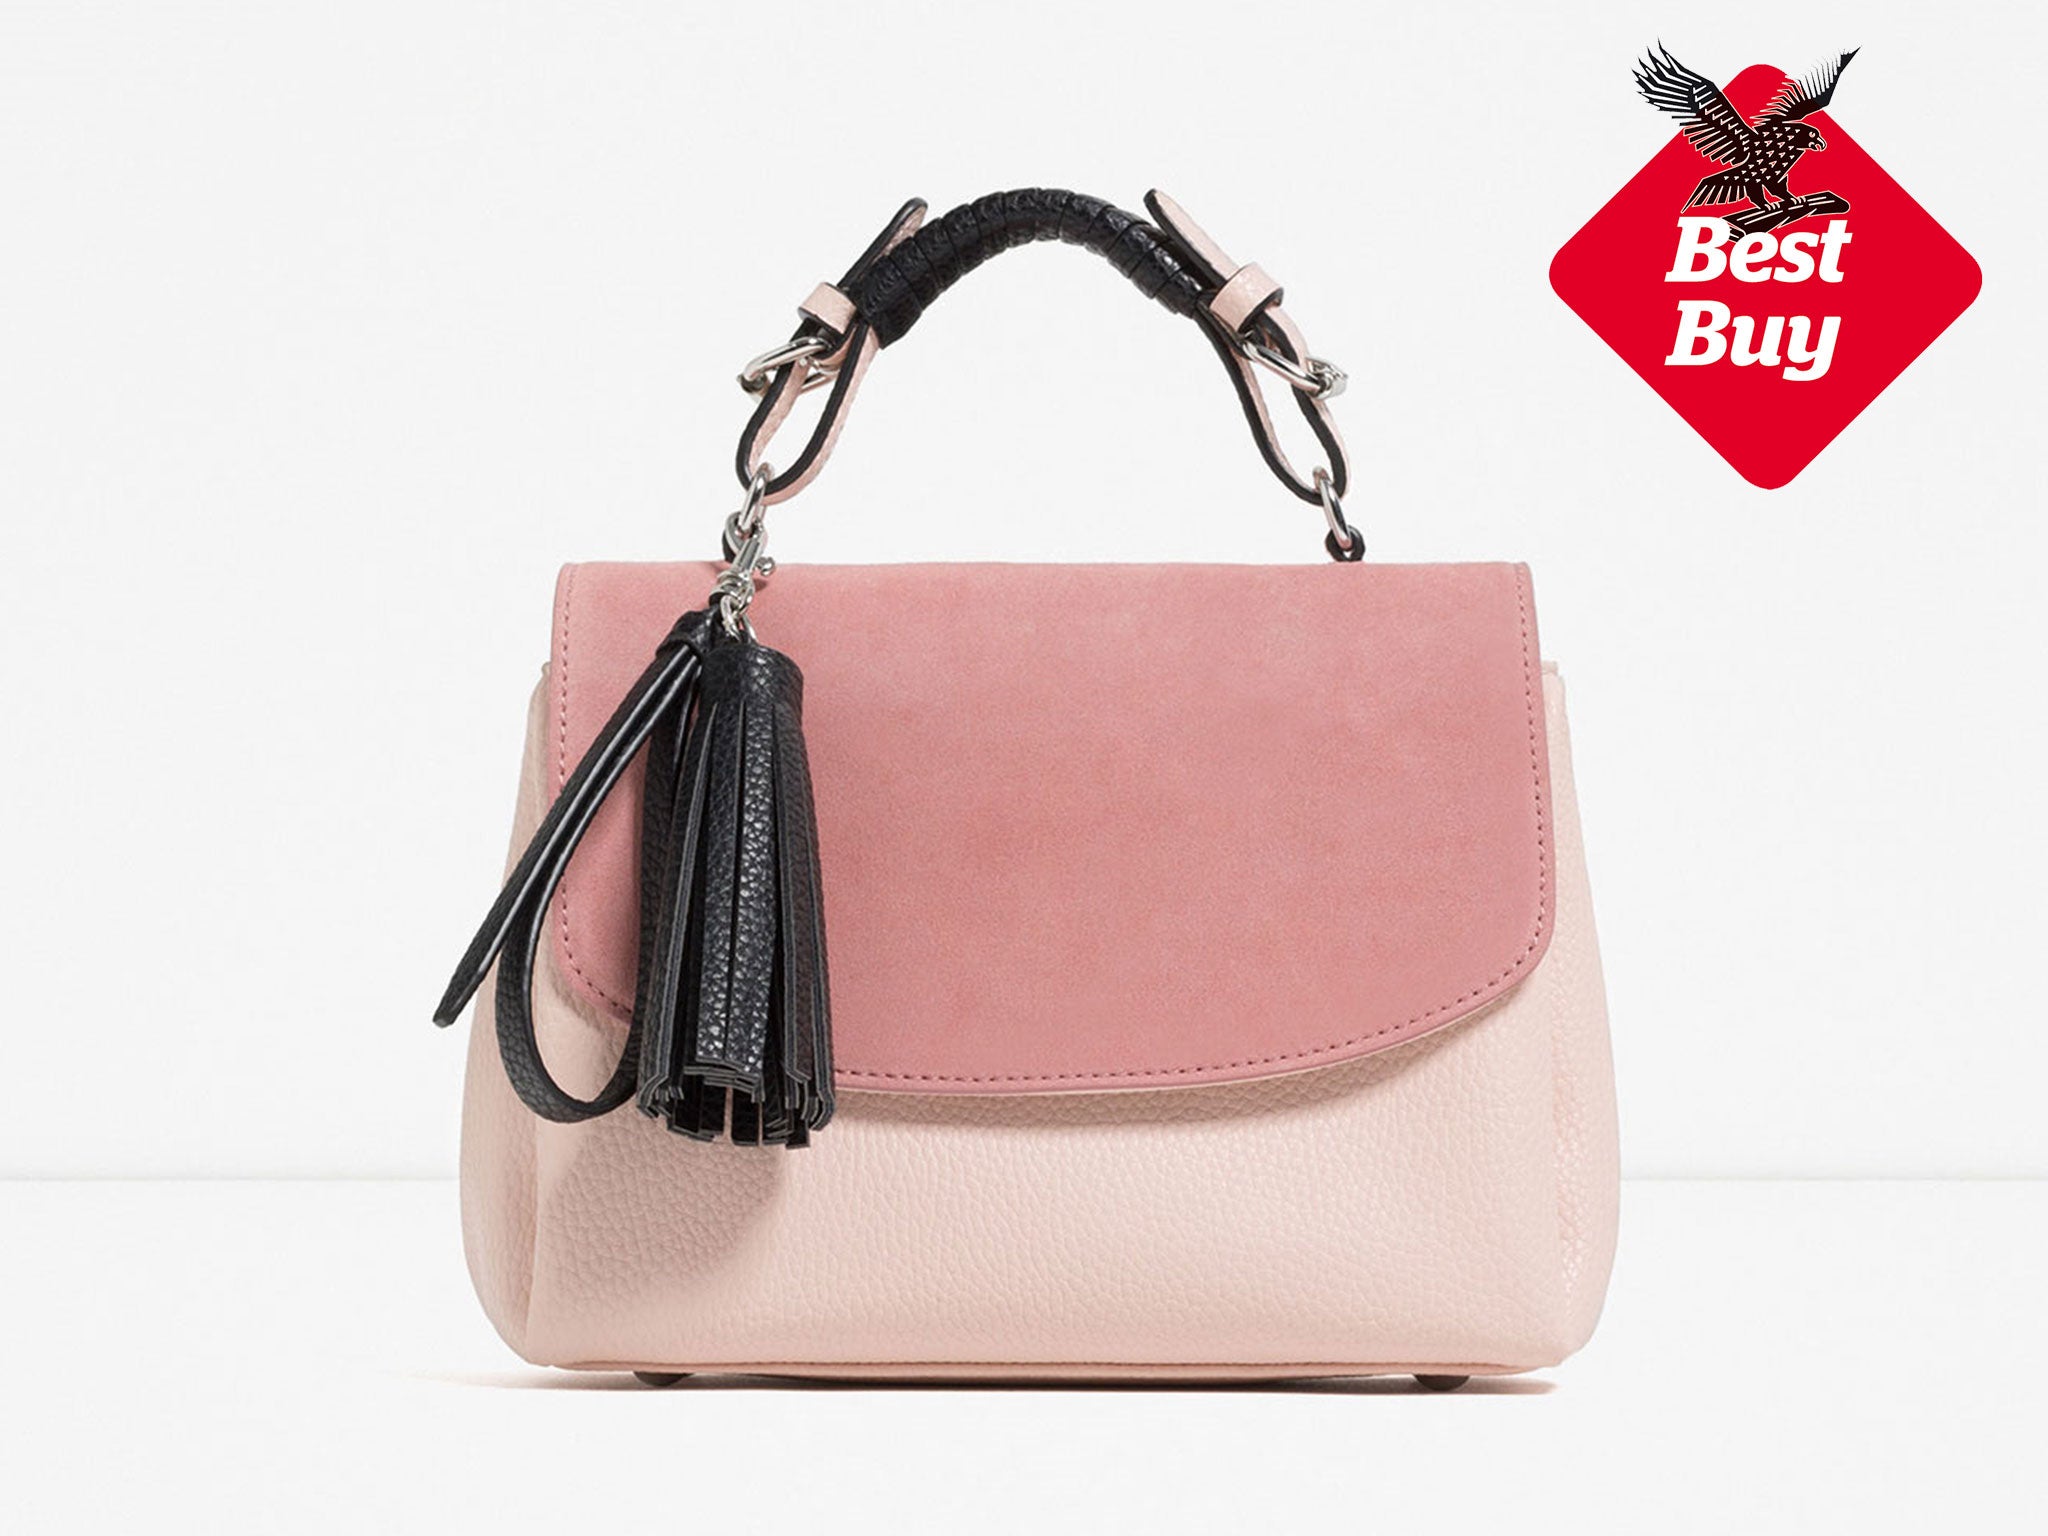 Zara : Pom Pom City Bag Review 